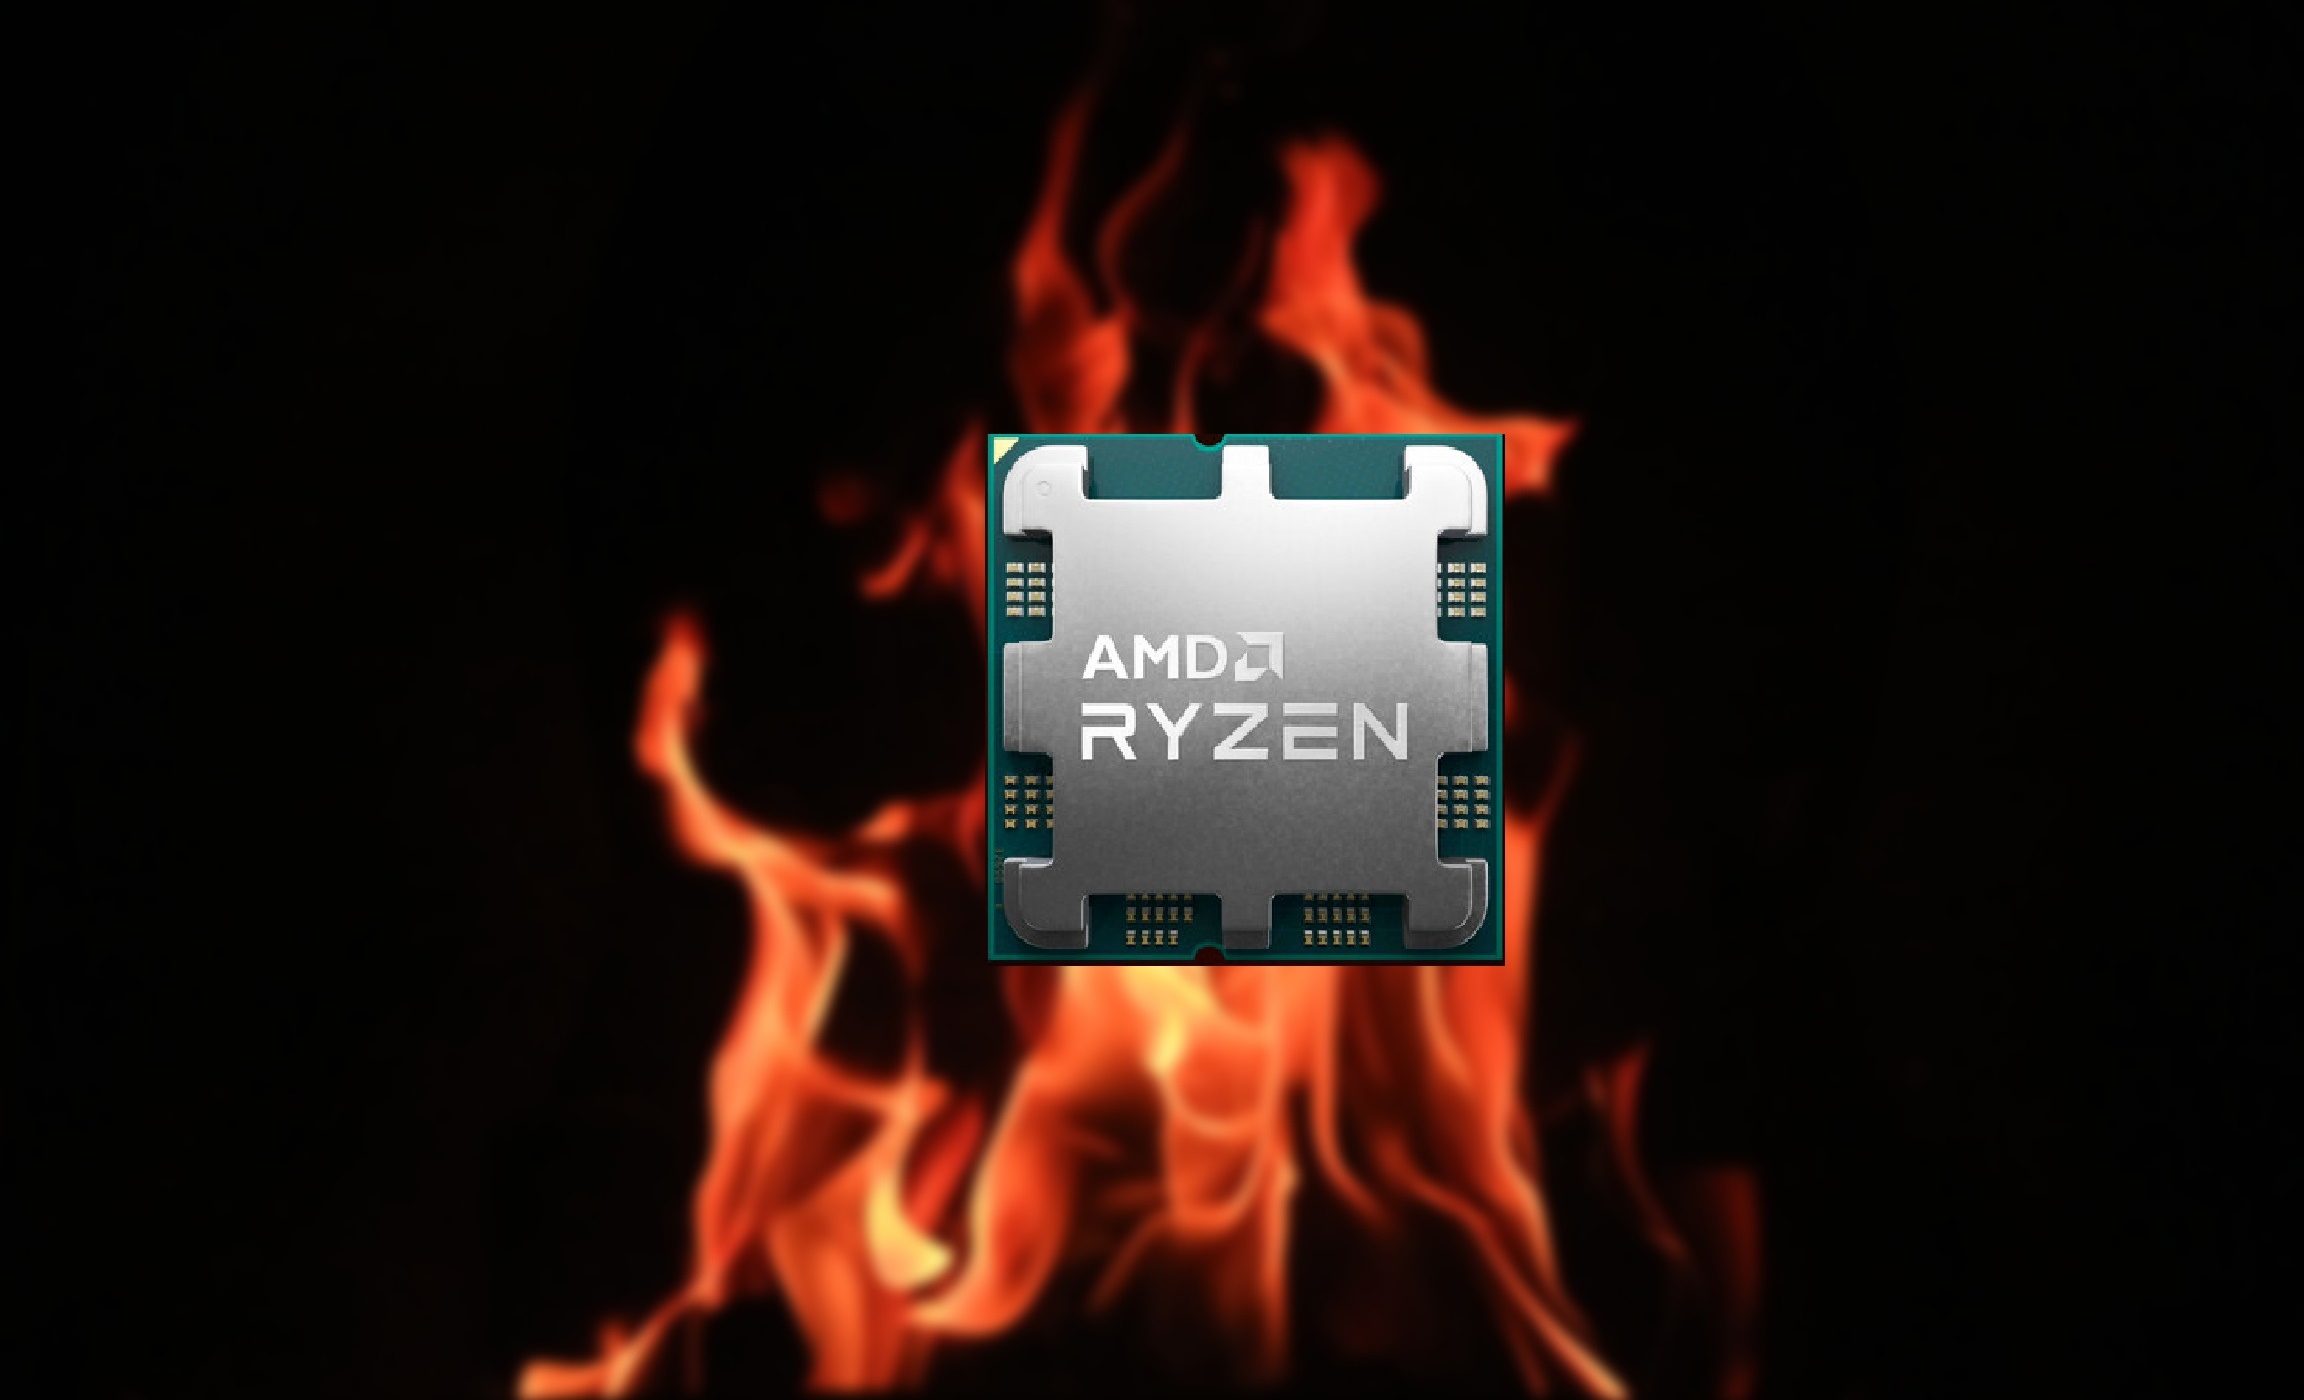 Ryzen i9 7950x. Процессор AMD Ryzen 5 7600x. Ryzen 7950x. Ryzen 9 7950x3d. AMD 9 7950.